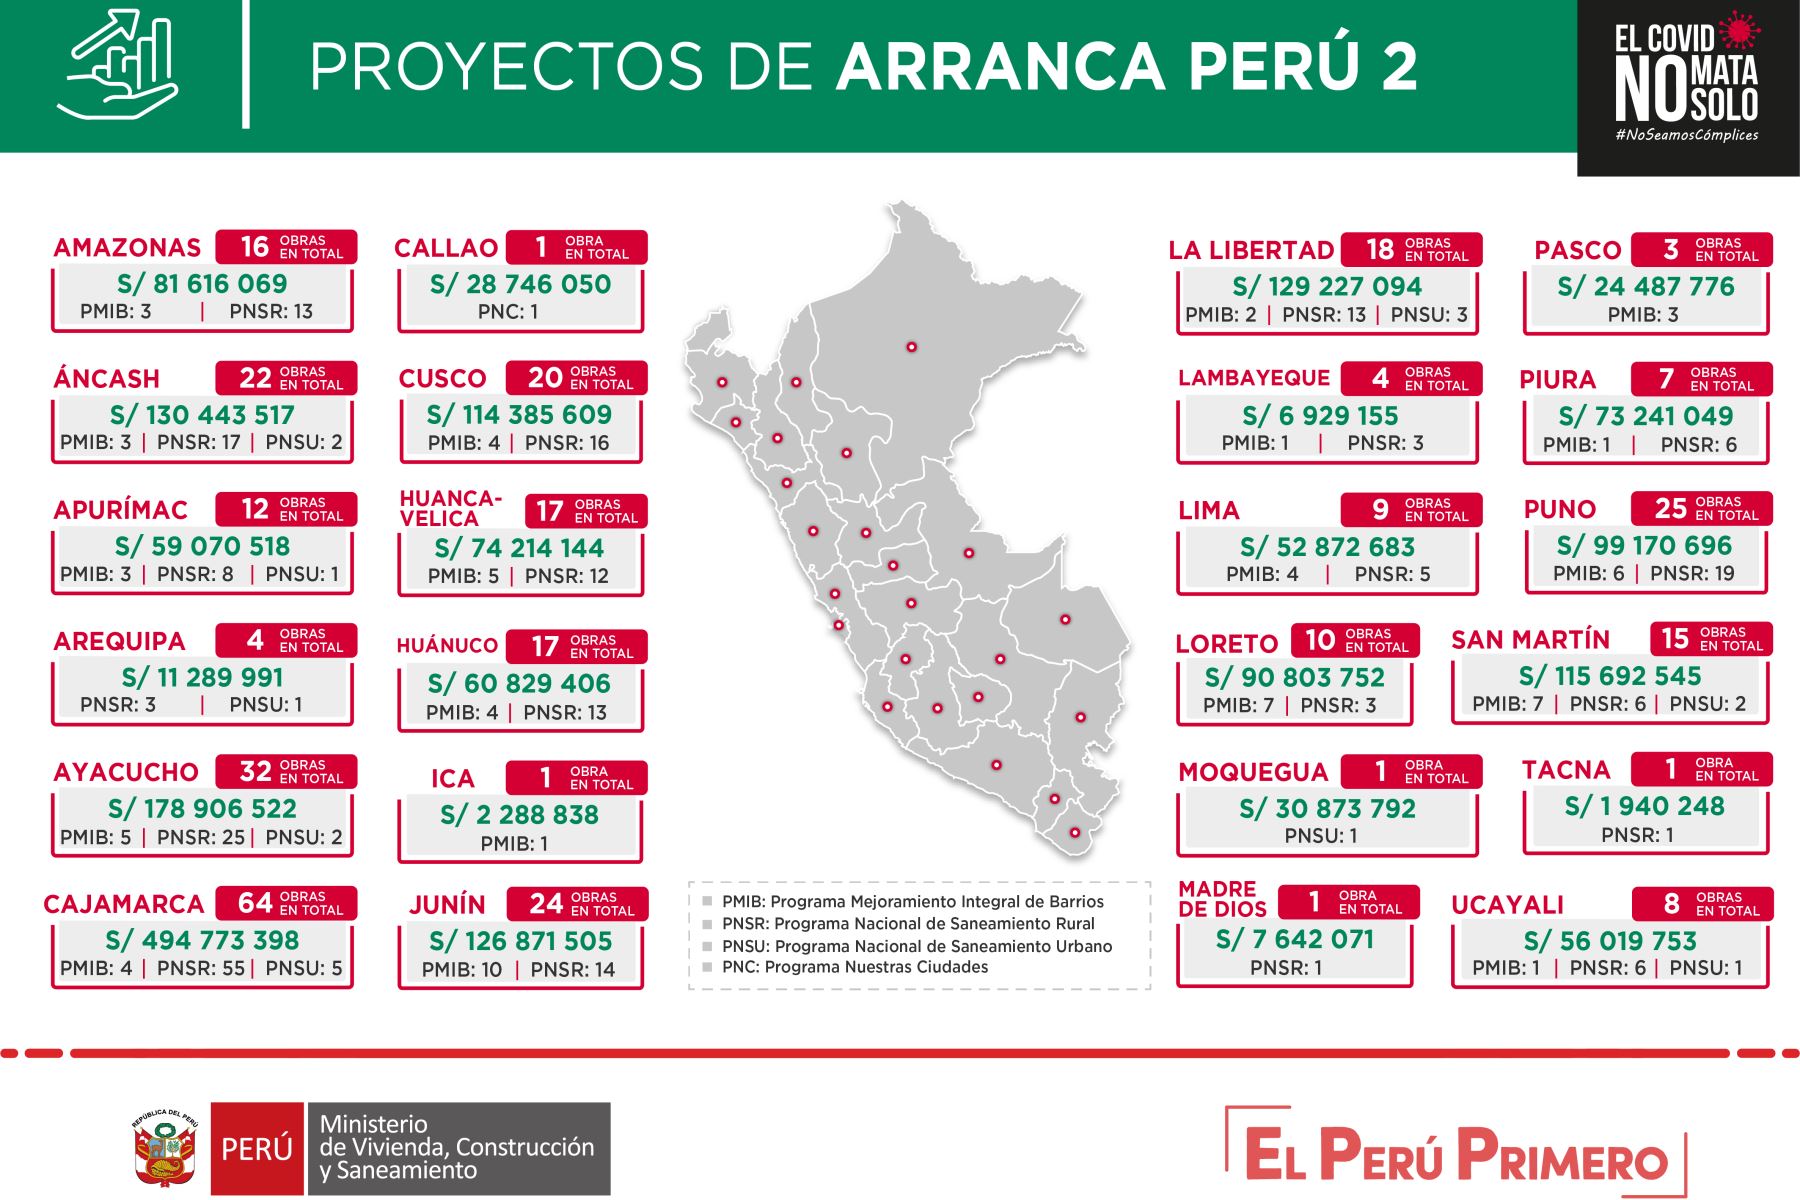 El Ministerio de Vivienda, Construcción y Saneamiento detalló que así se distribuirán los más de S/ 2,000 millones de Arranca Perú 2 en las regiones. Foto: ANDINA/Difusión